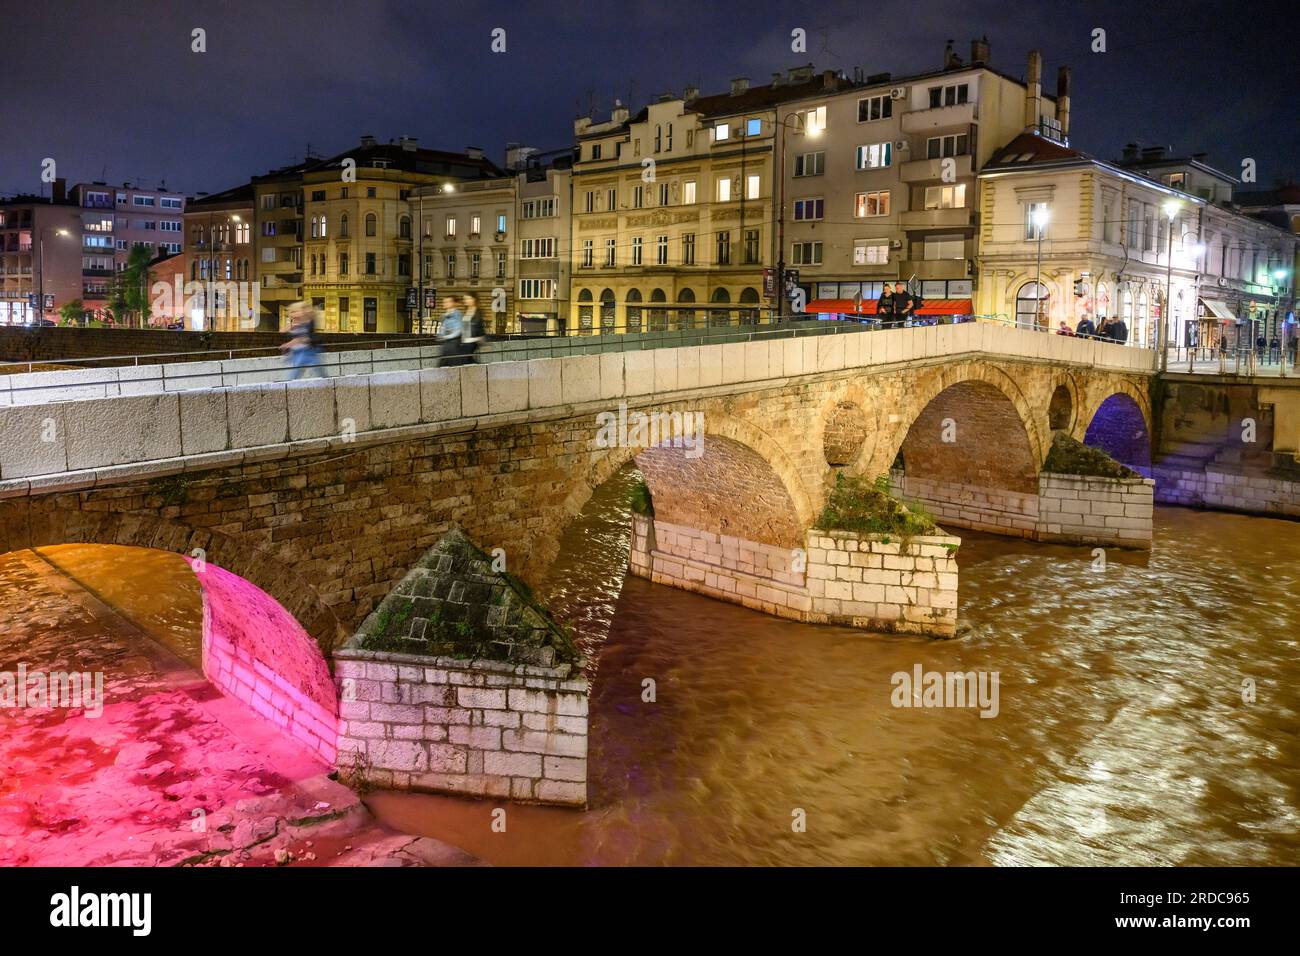 Il Ponte Latino sul fiume Miljacka accanto alla siite dell'assassinio dell'arciduca Francesco Ferdinando nel 1914. Sarajevo, Bosnia centrale Herz Foto Stock